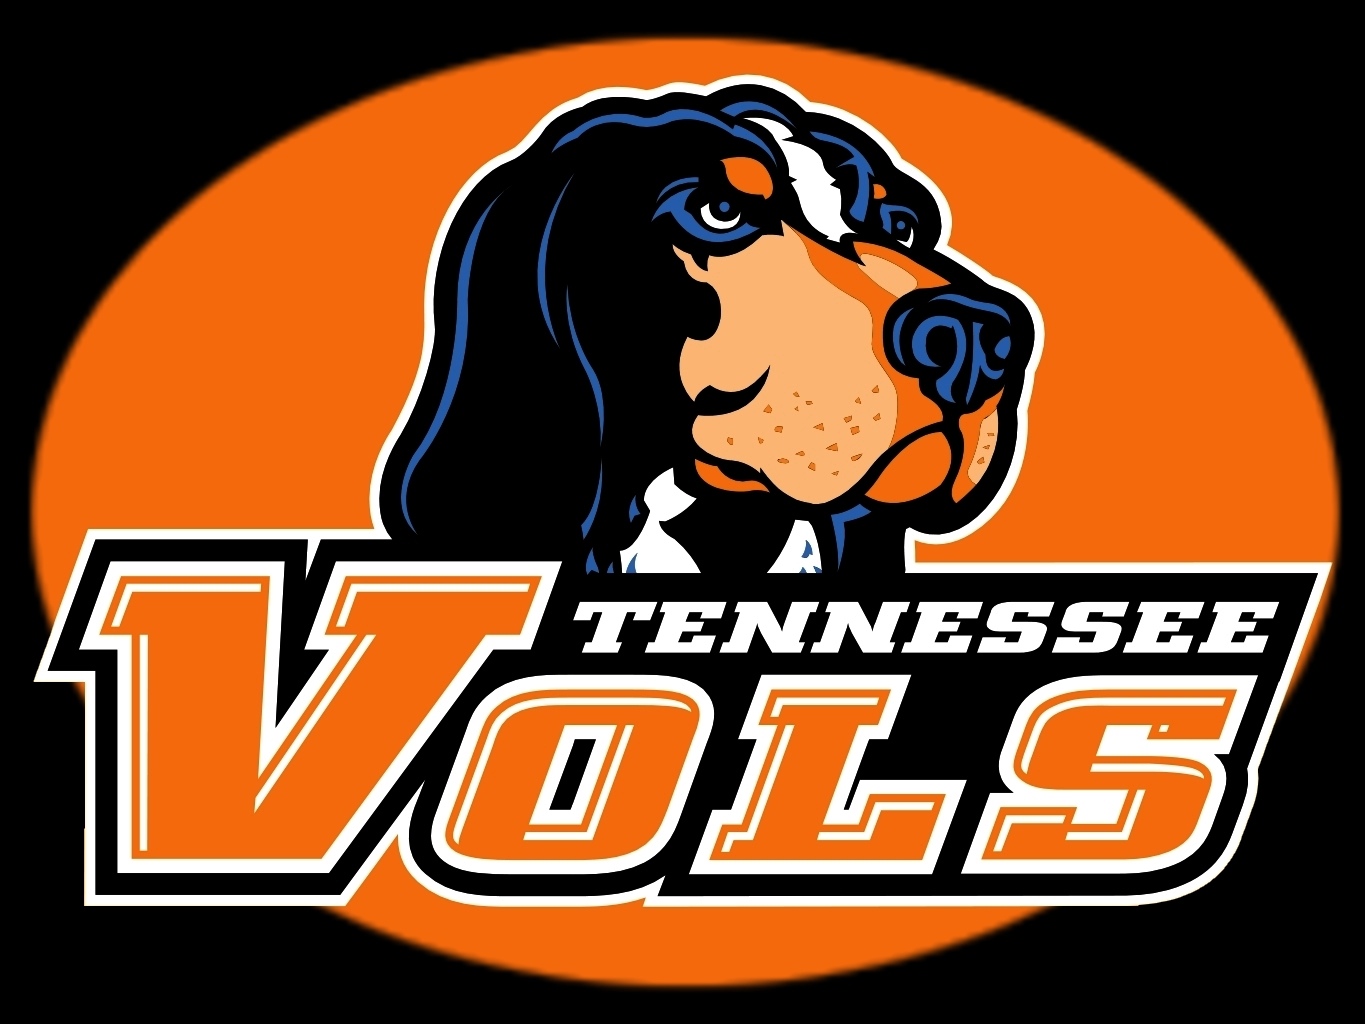 Tennessee Volunteers Football Wikipedia The